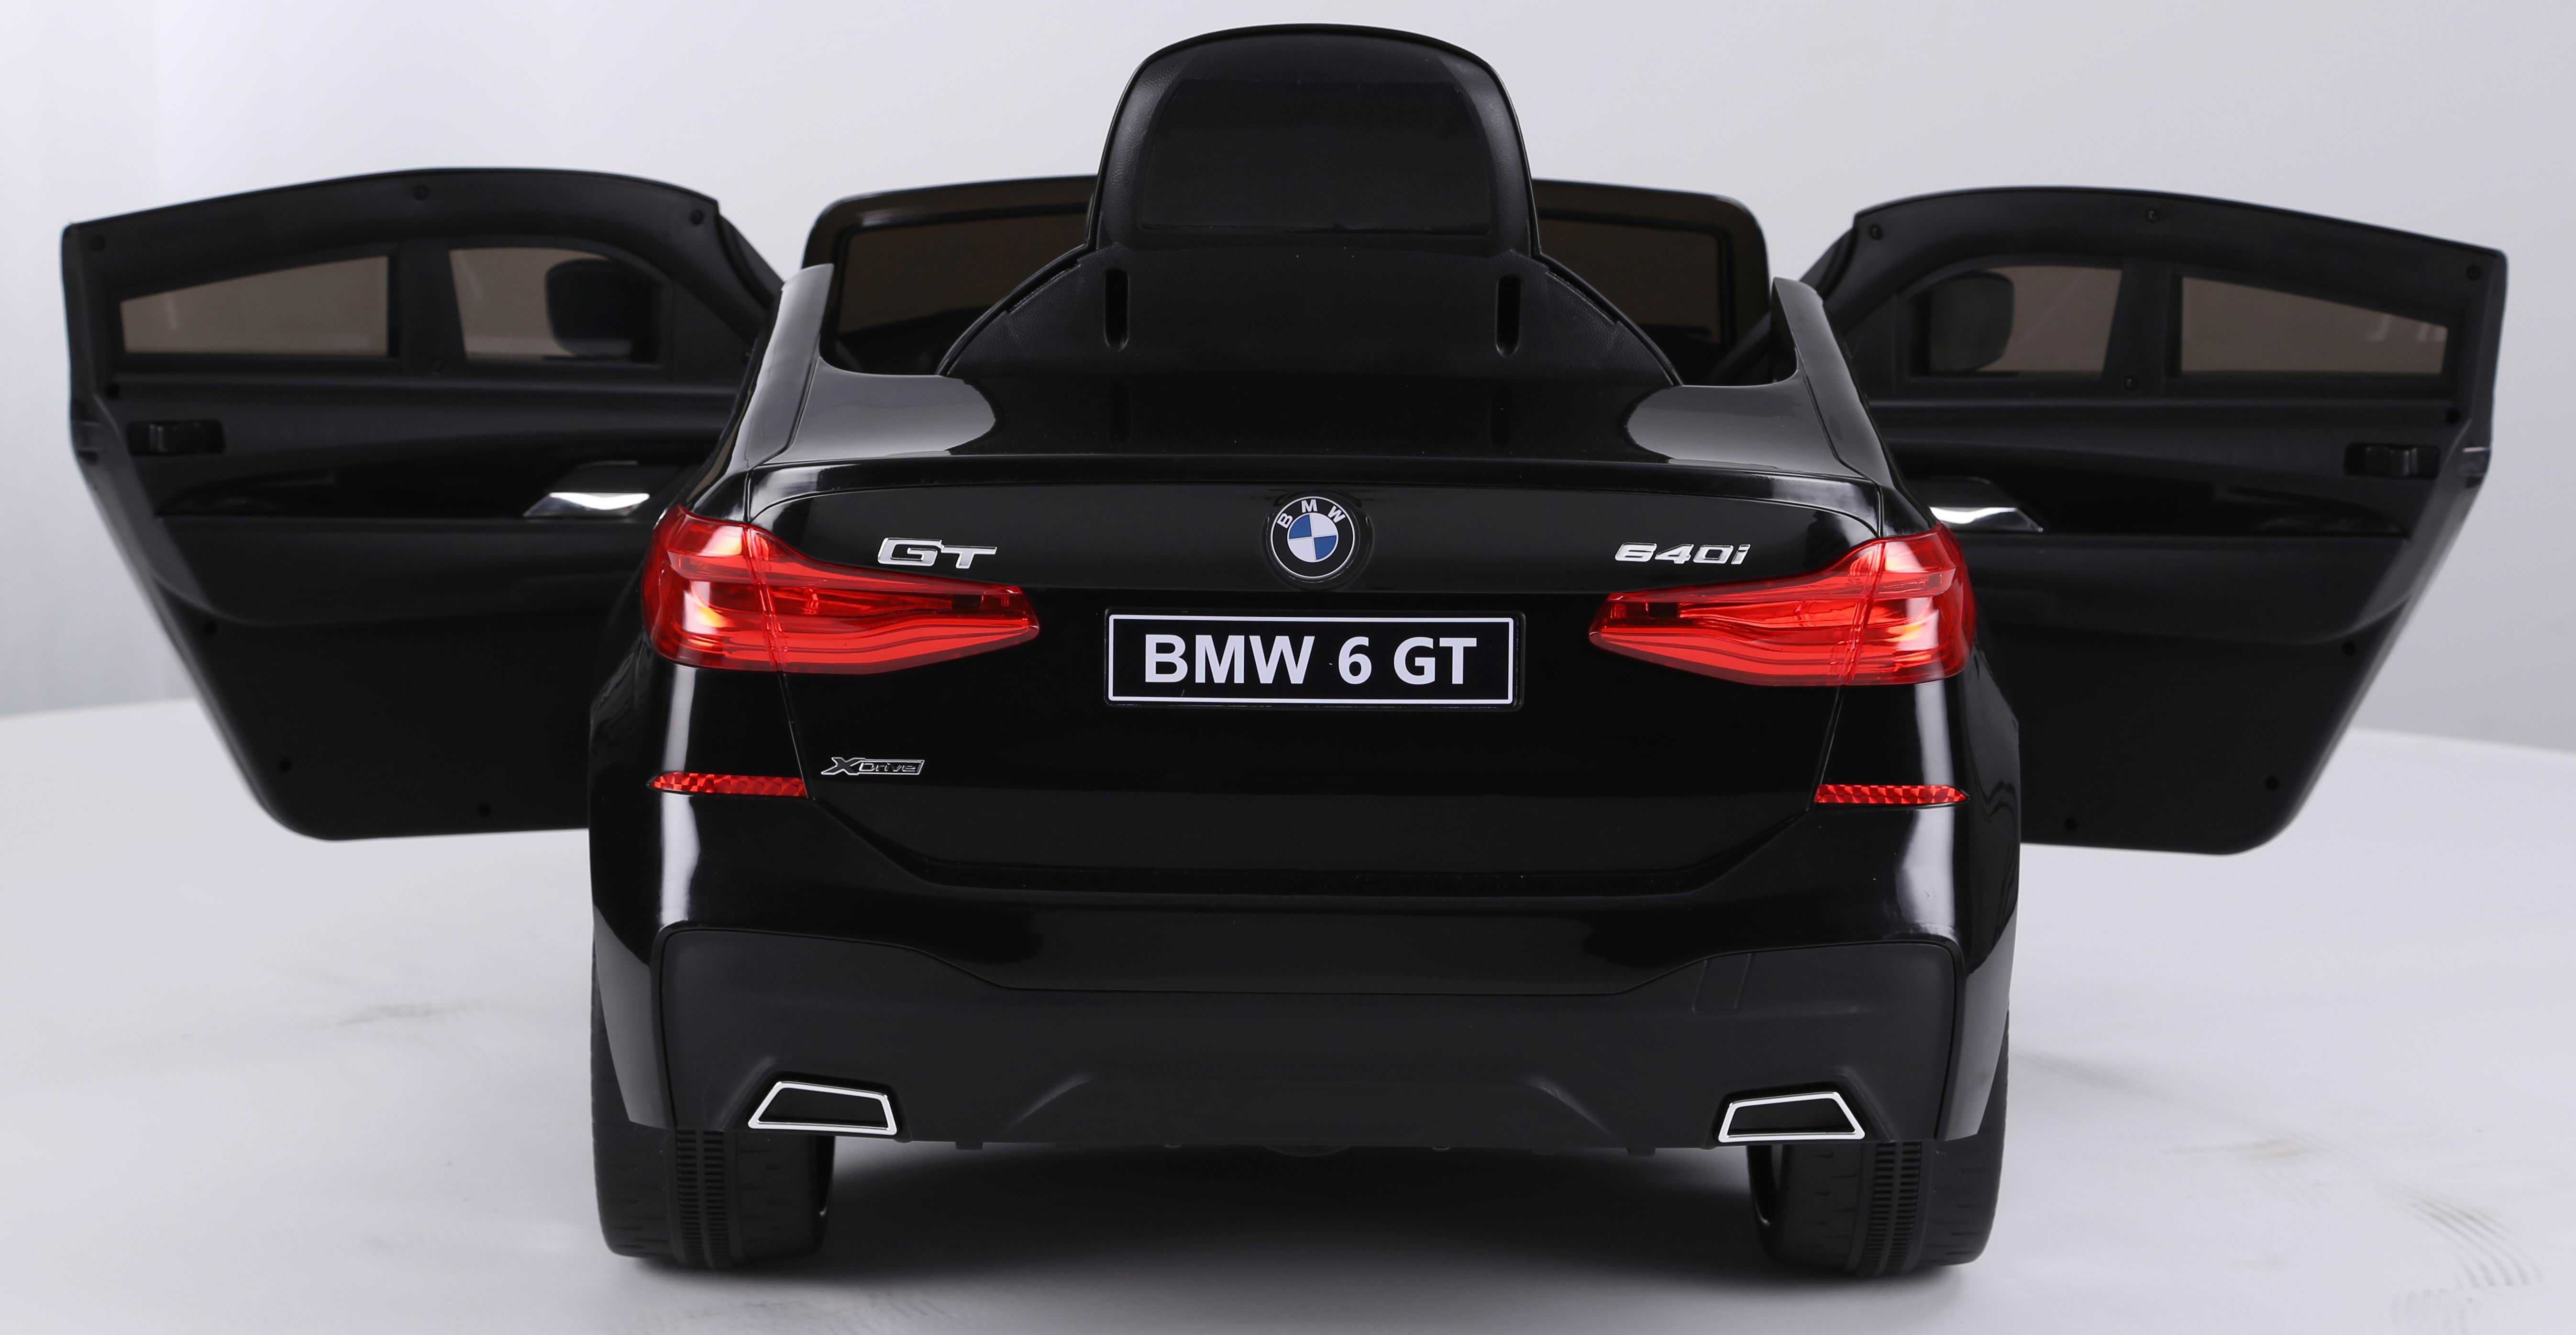 Masinuta electrica pentru copi BMW seria 6 GT rosie. Garantie